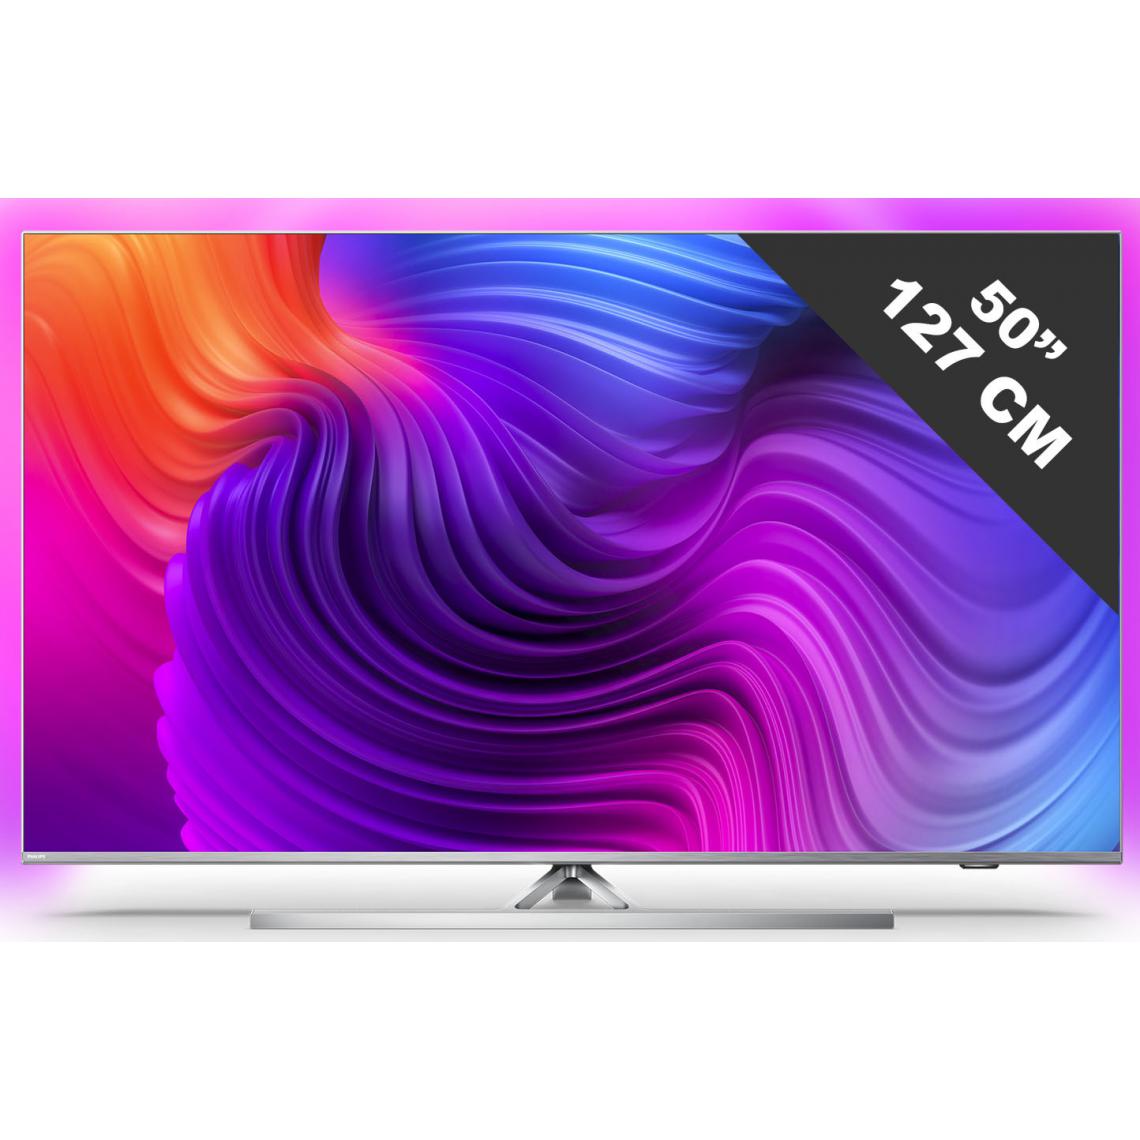 Philips - TV LED - LCD 50 pouces PHILIPS HDTV 1080p G, 50PUS8506/12 - TV 50'' à 55''